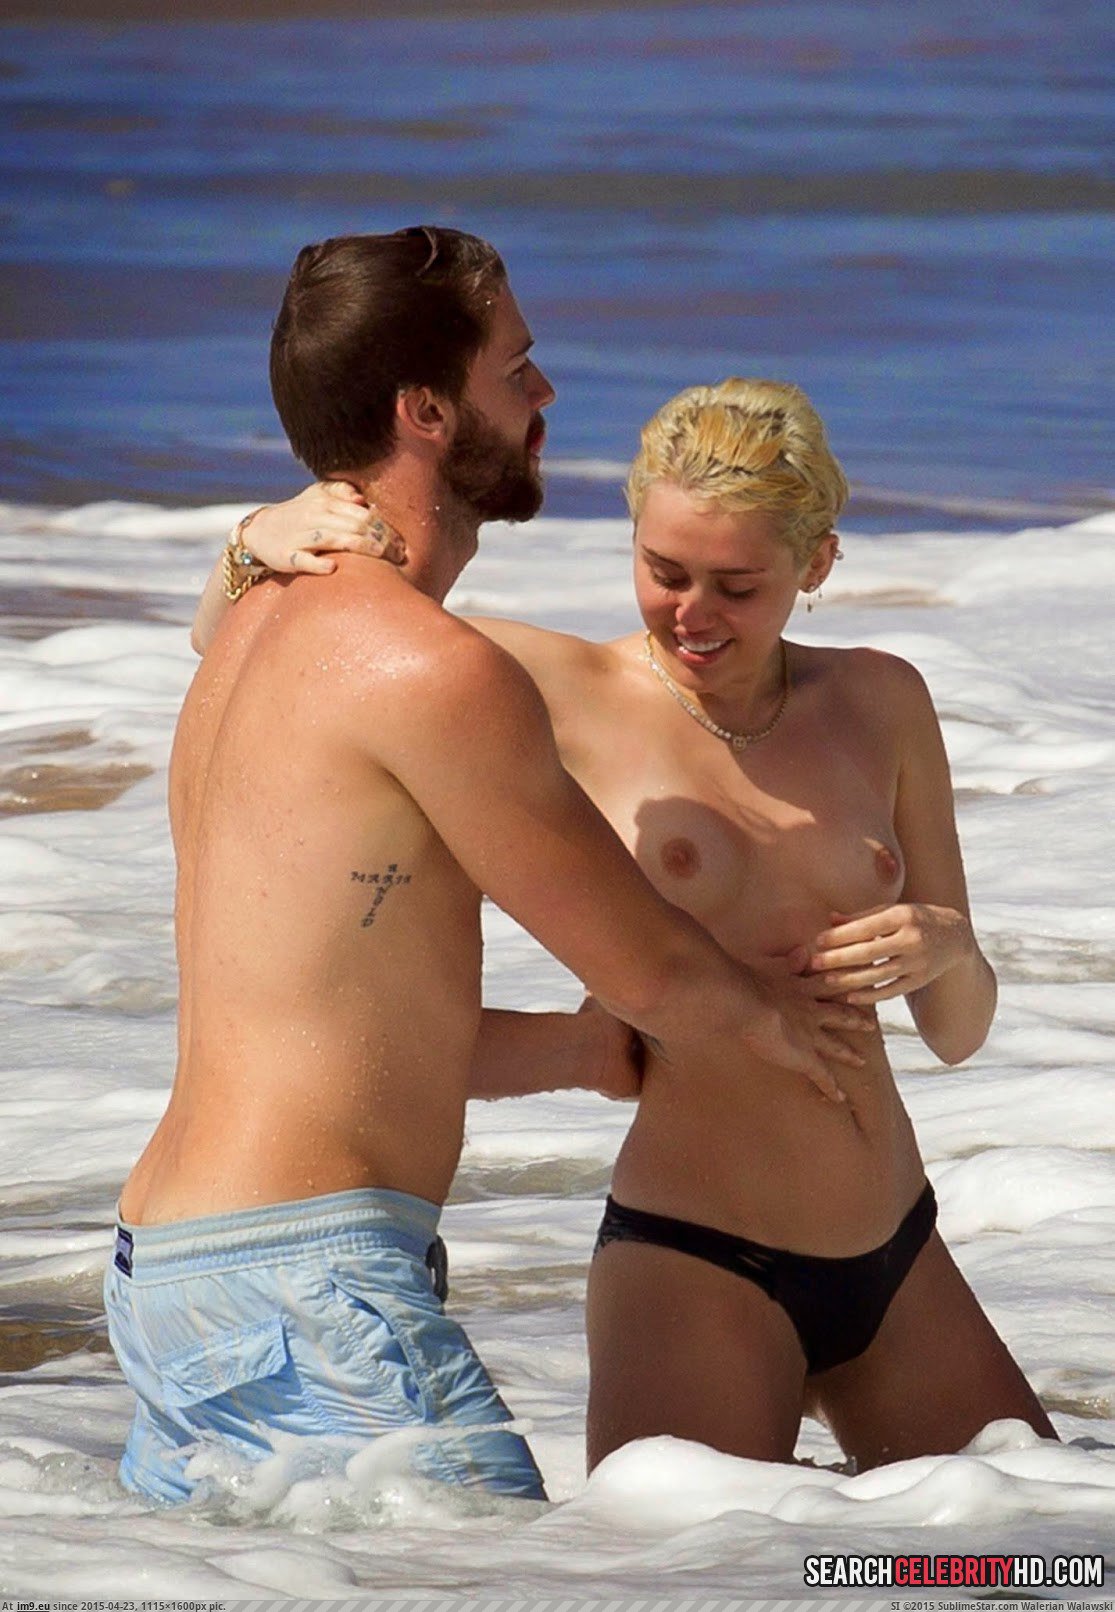 Miley Cyrus Topless Bikini Candid Photos In Hawaii (3) (in Miley Cyrus Topless Bikini Candid Photos In Hawaii)